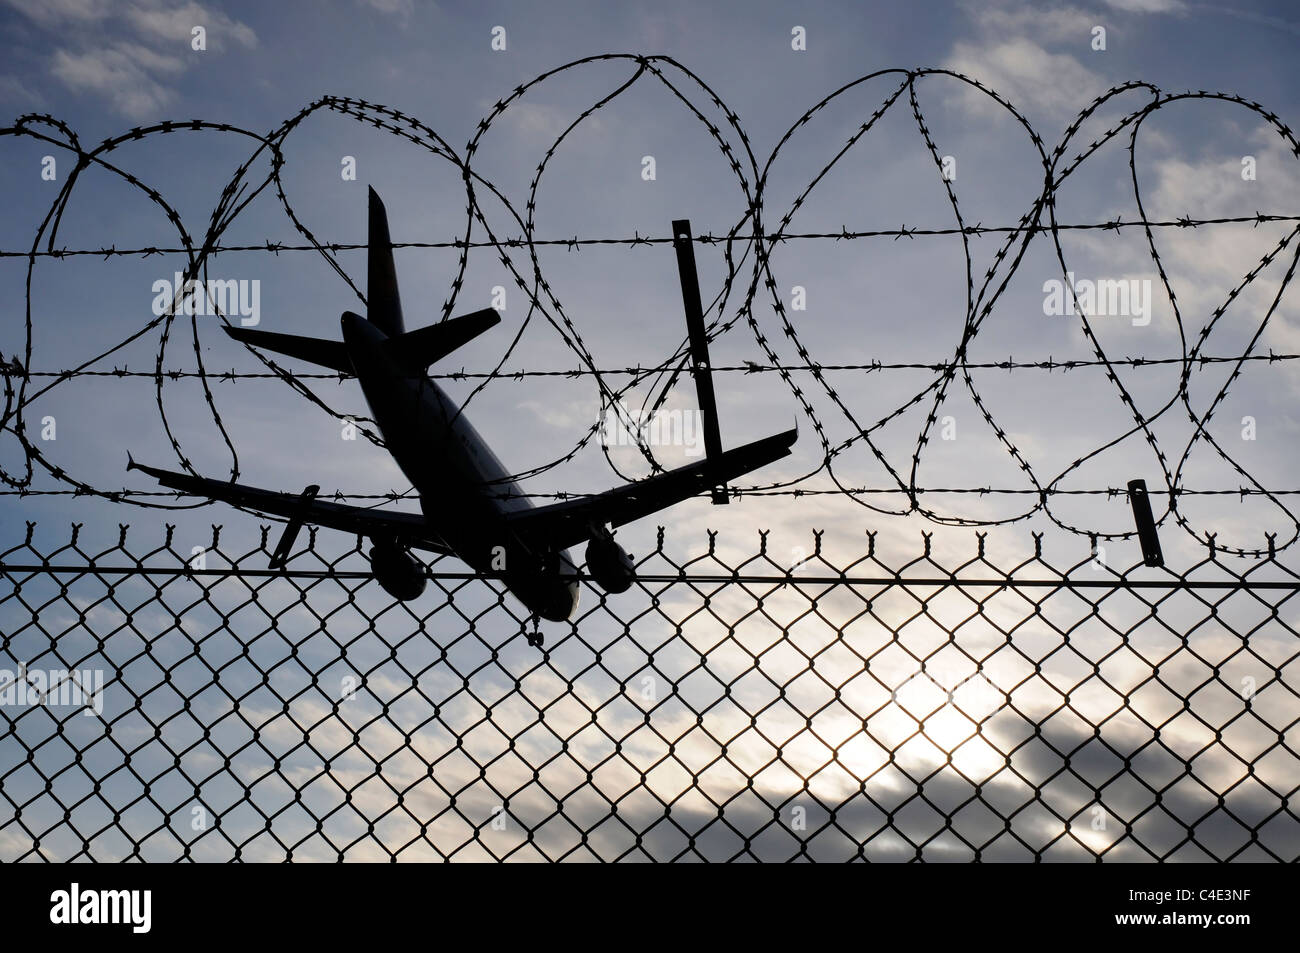 Un avión de aterrizaje cruzar la alambrada de cerco perimetral en el aeropuerto de Heathrow Foto de stock